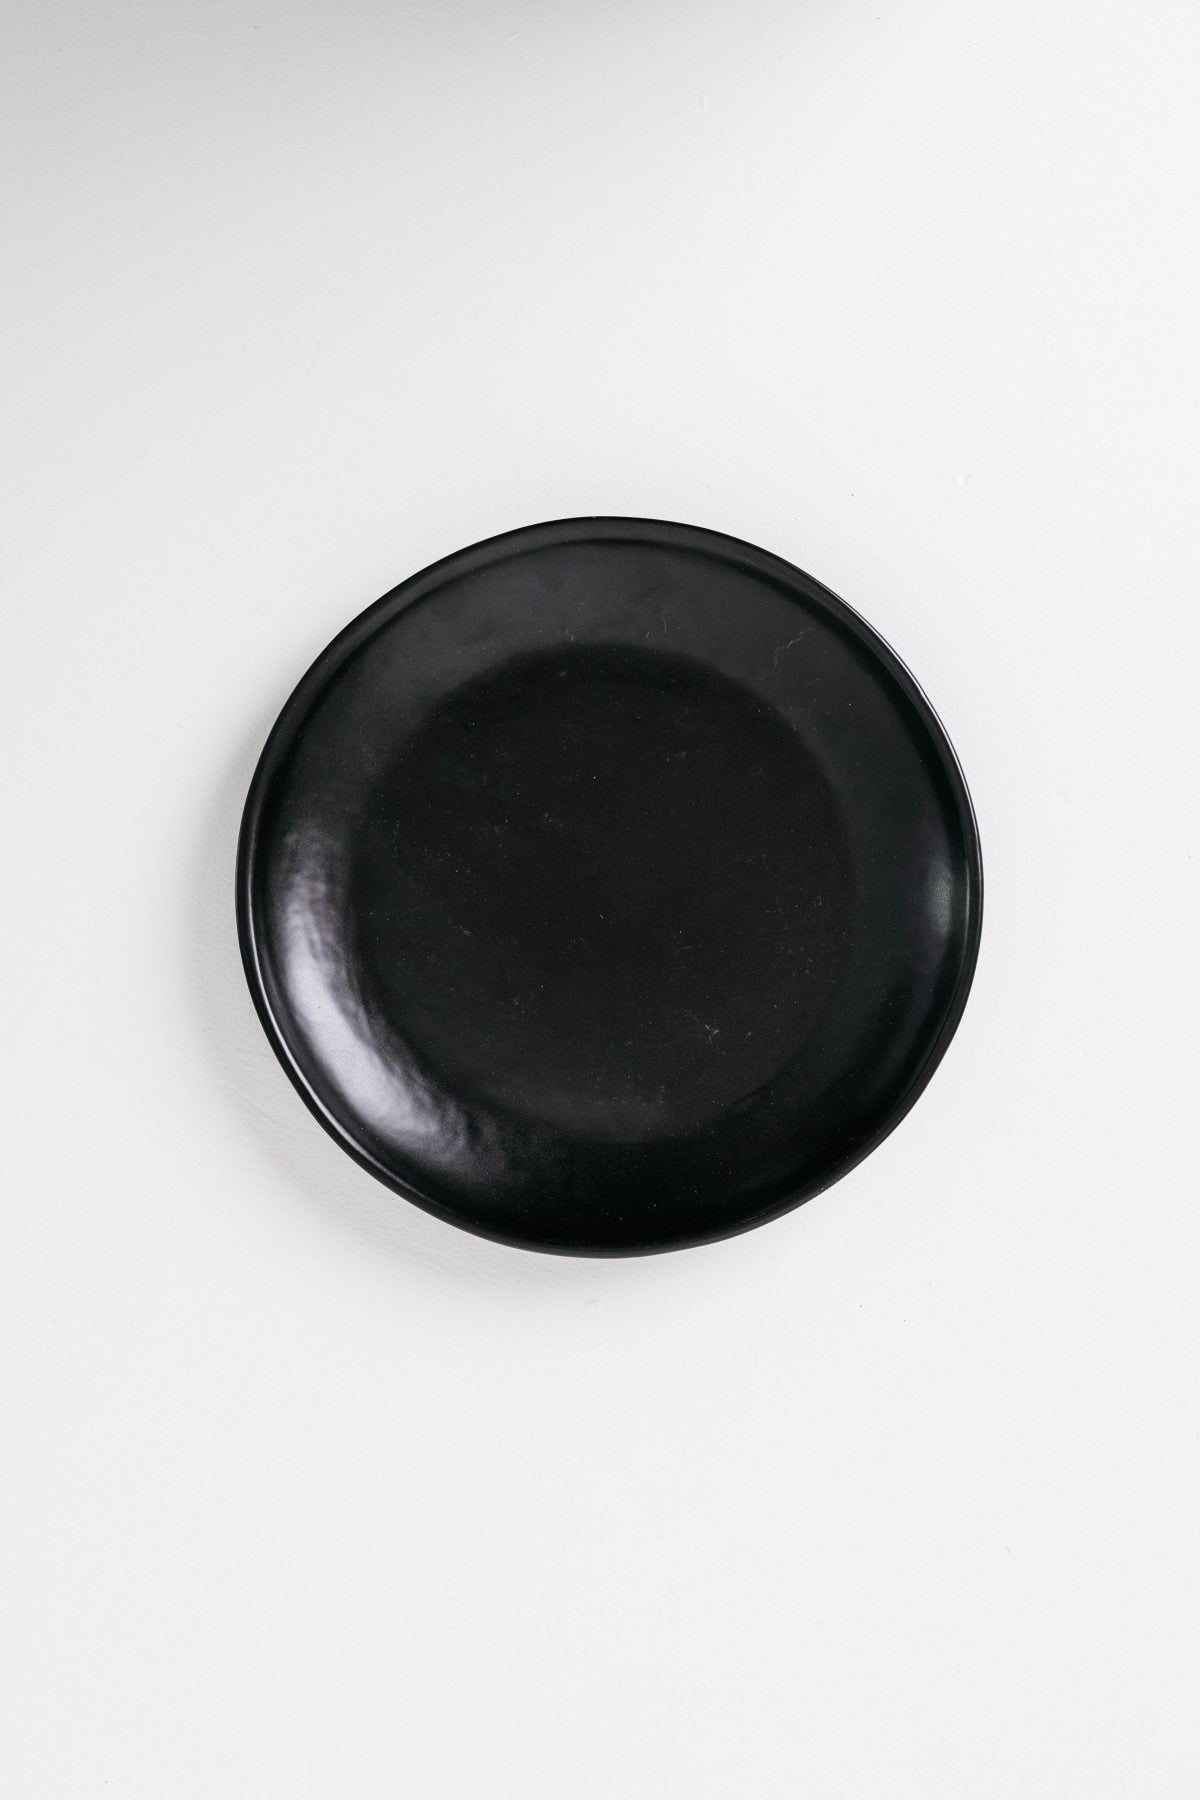 Dusk Dinner Plate - Matte Black - Set of 6